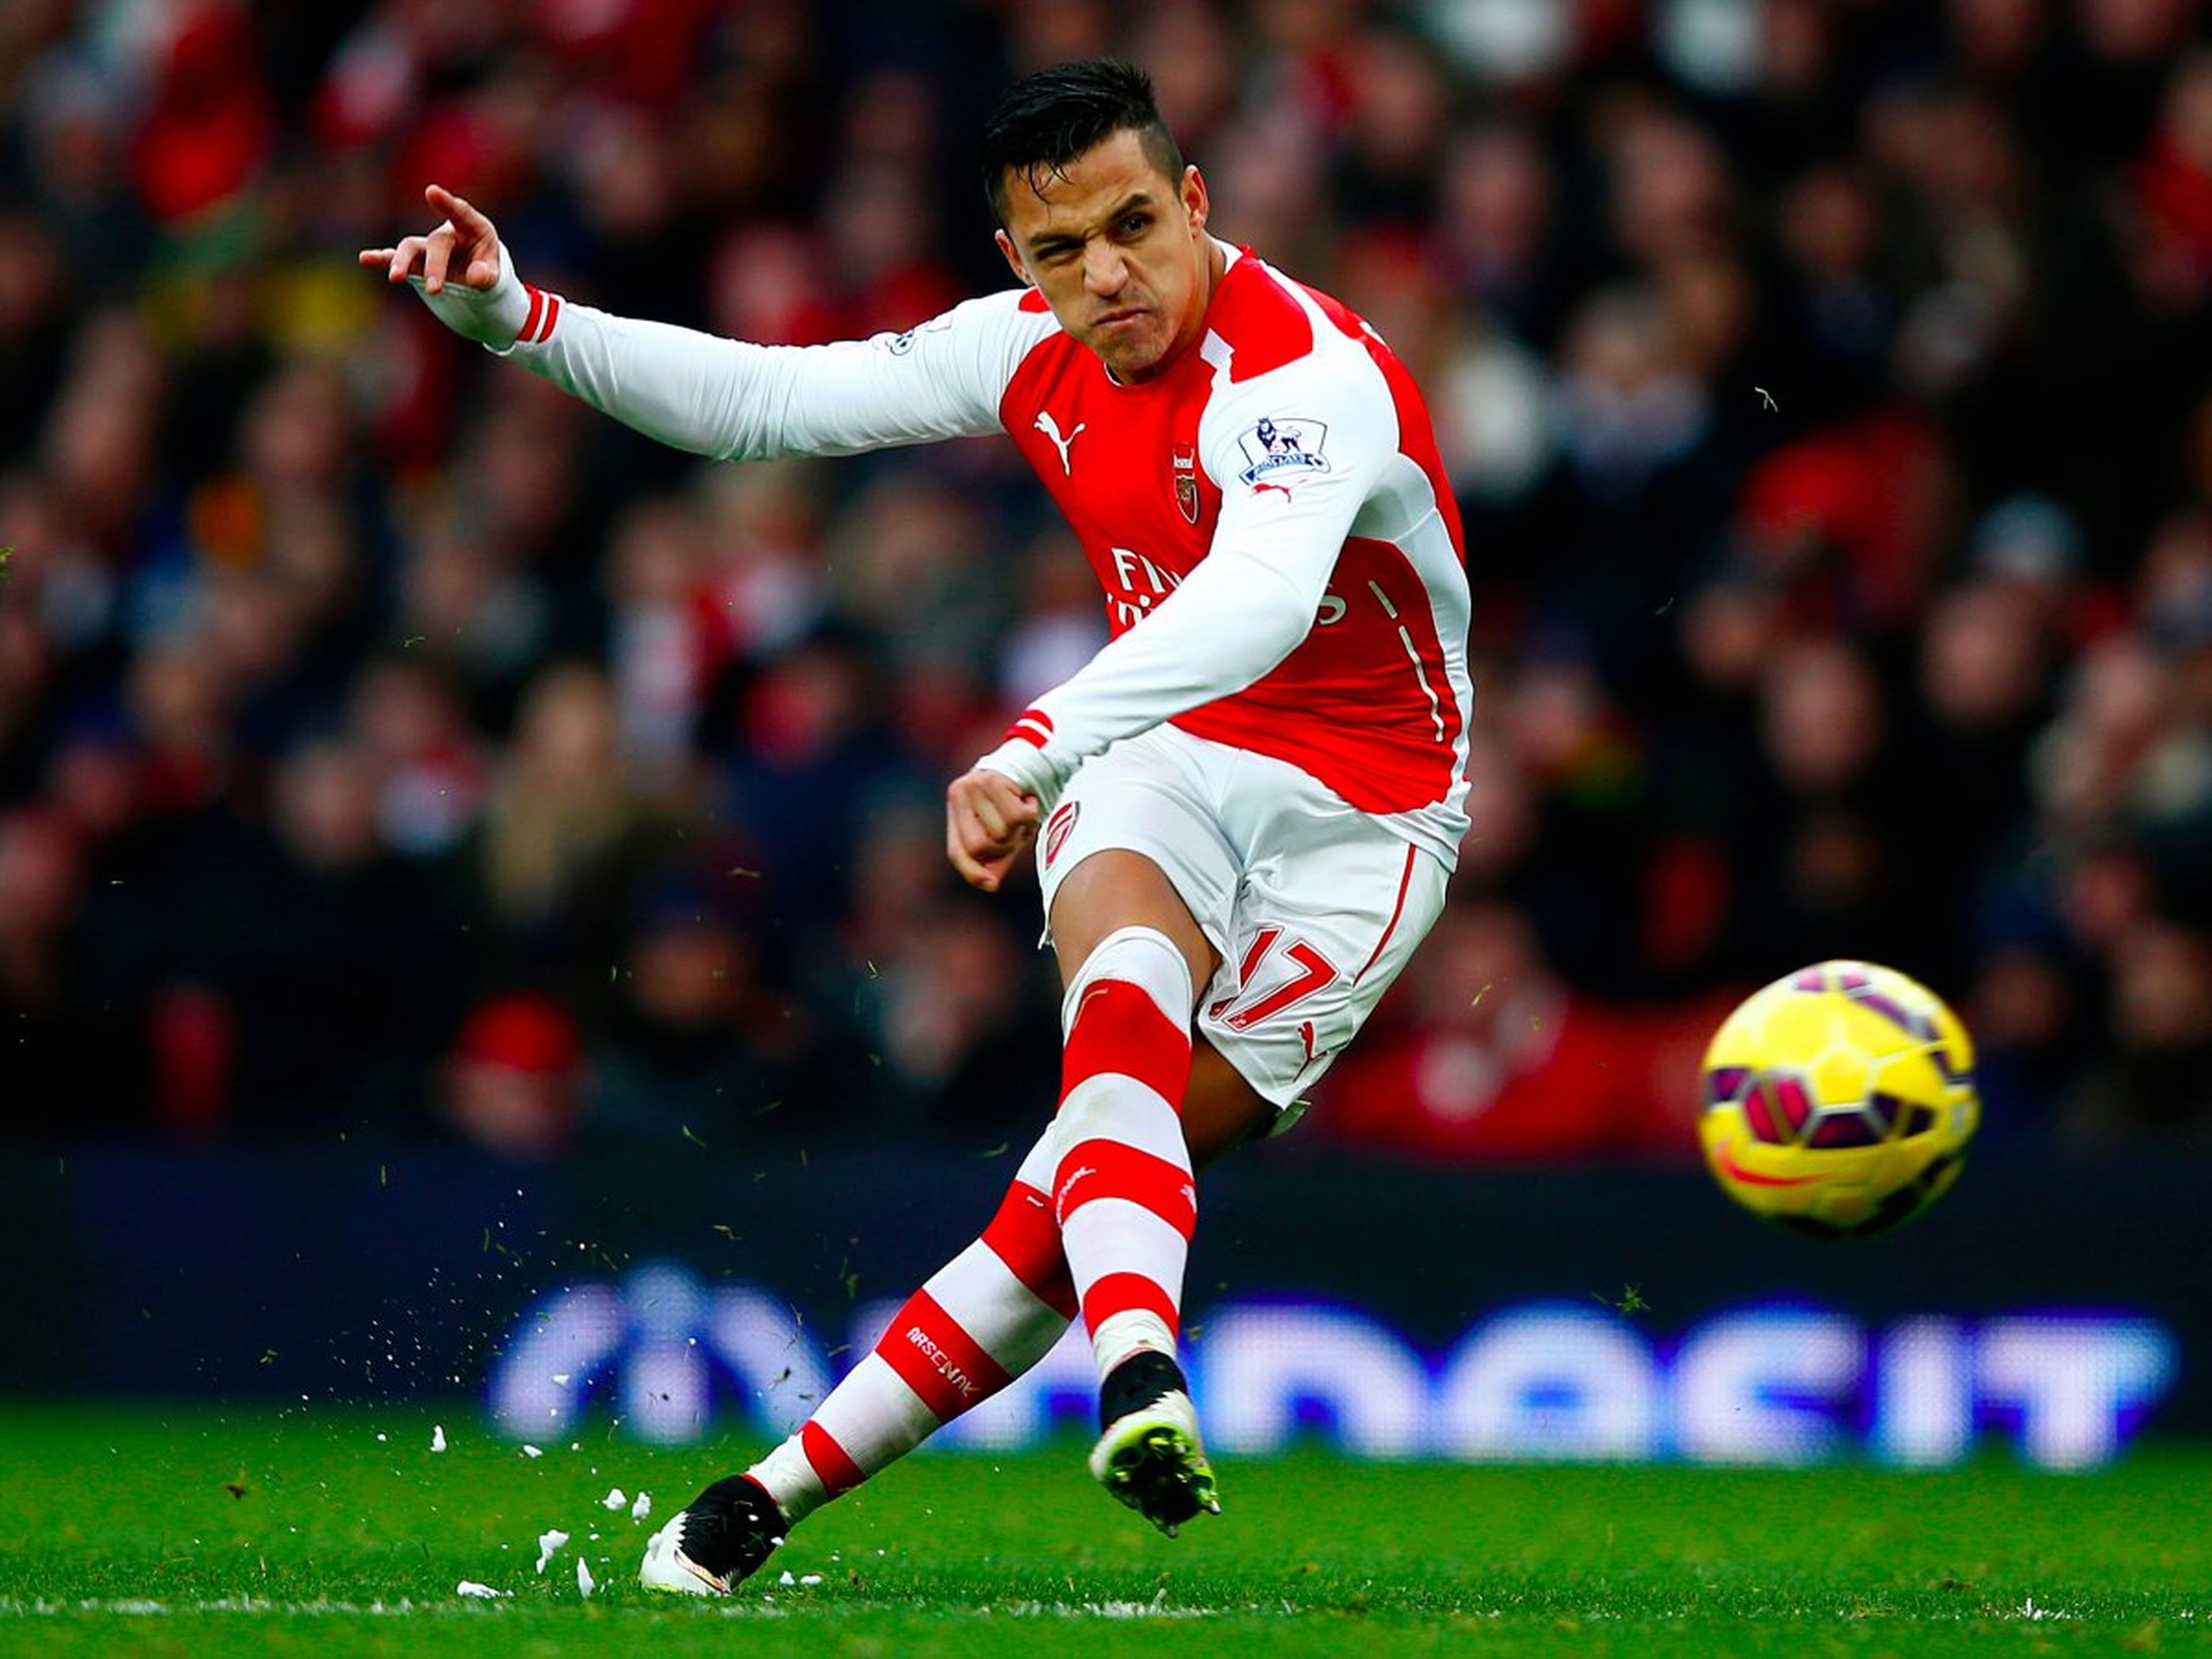 El jugador de fútbol del Arsenal, Alexis Sánchez, realiza un lanzamiento.